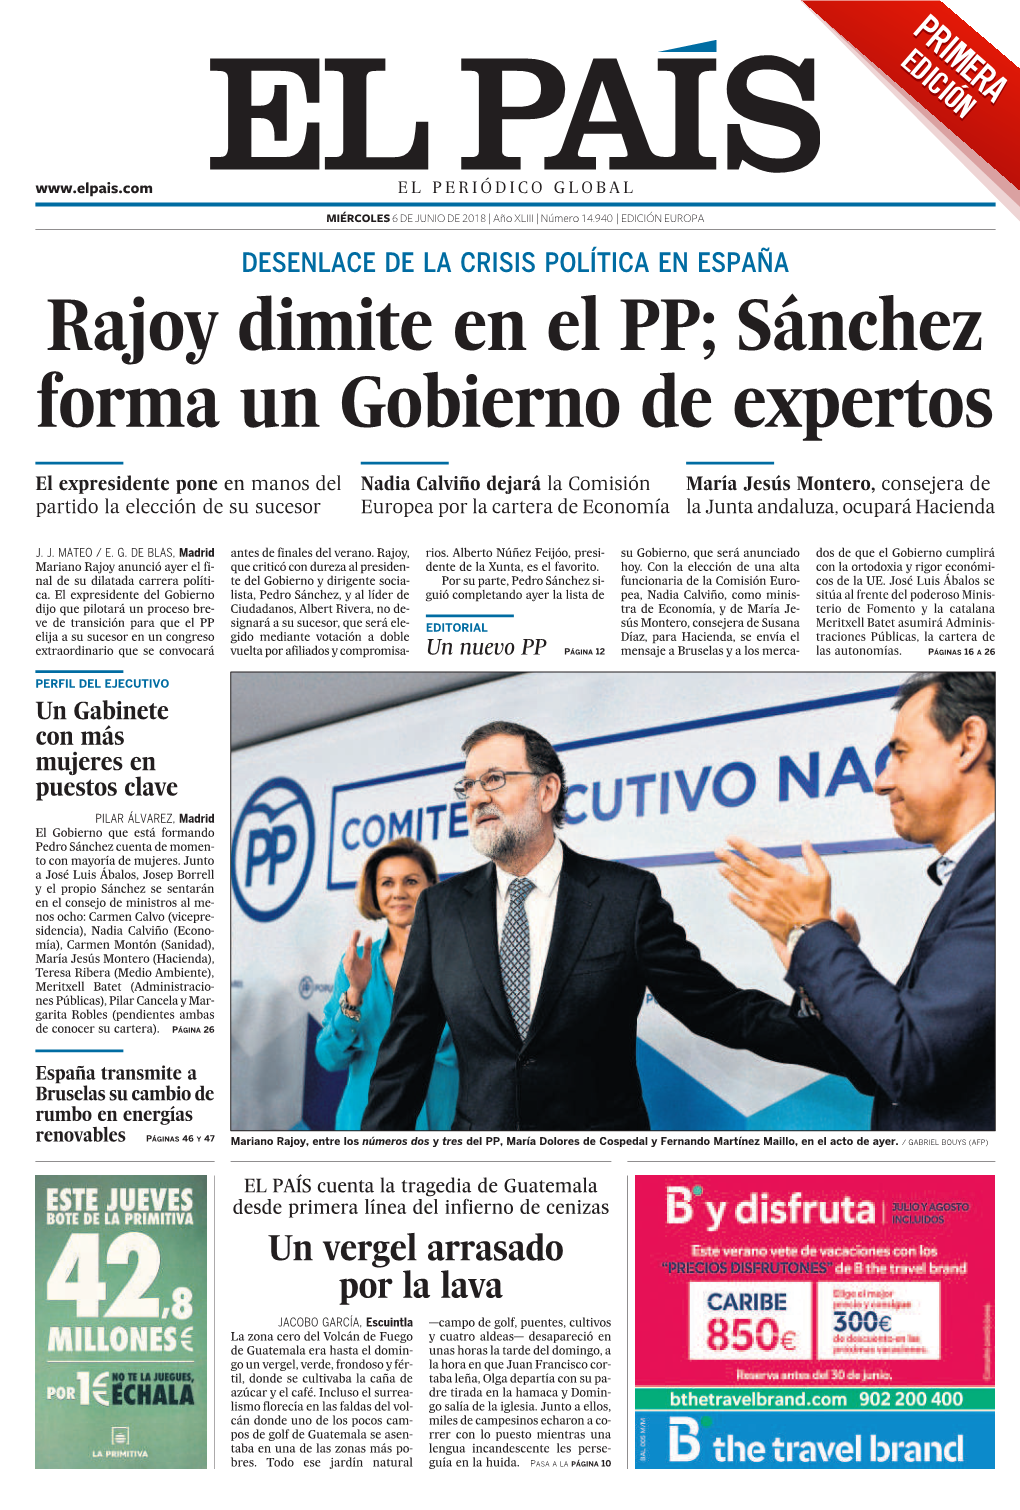 Rajoy Dimite En El PP; Sánchez Forma Un Gobierno De Expertos